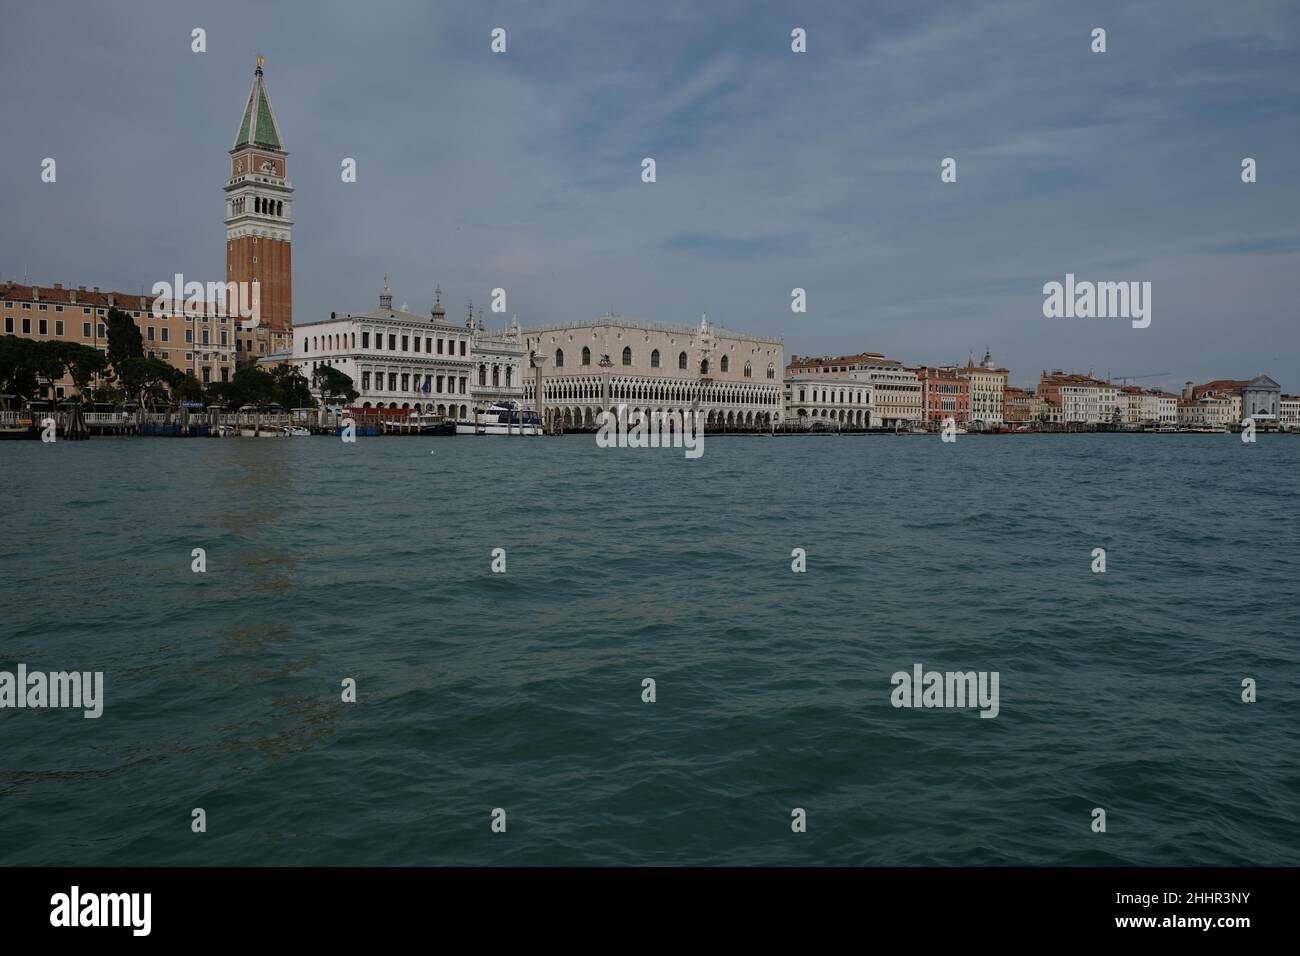 Vedute di Venezia durante il blocco causato dalla malattia del coronavirus. Venezia. Italia, 20 marzo 2020. Foto Stock